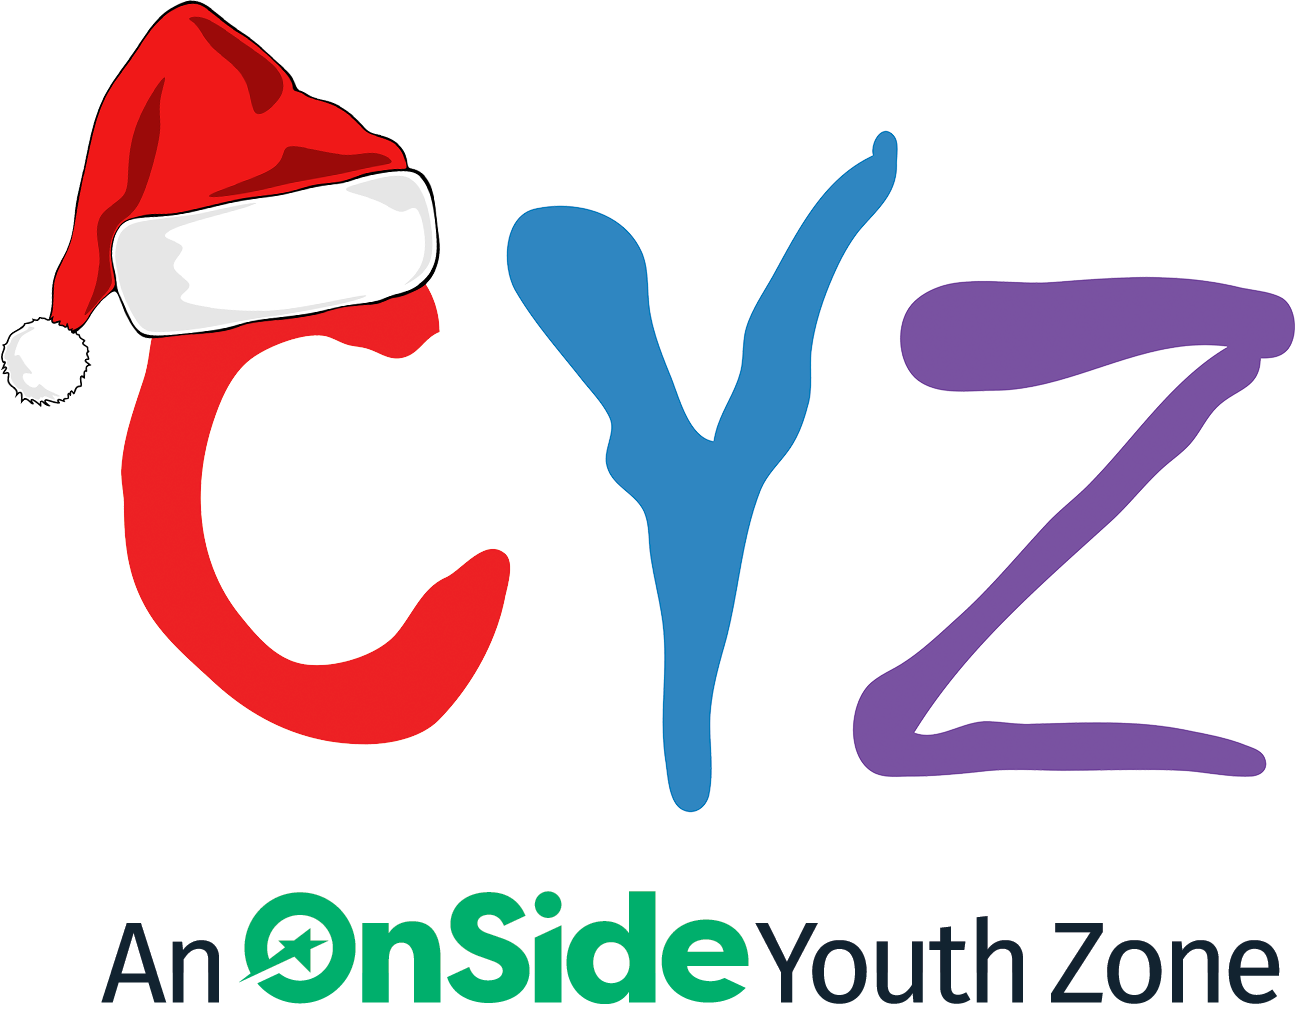 Carlisle Youth Zone